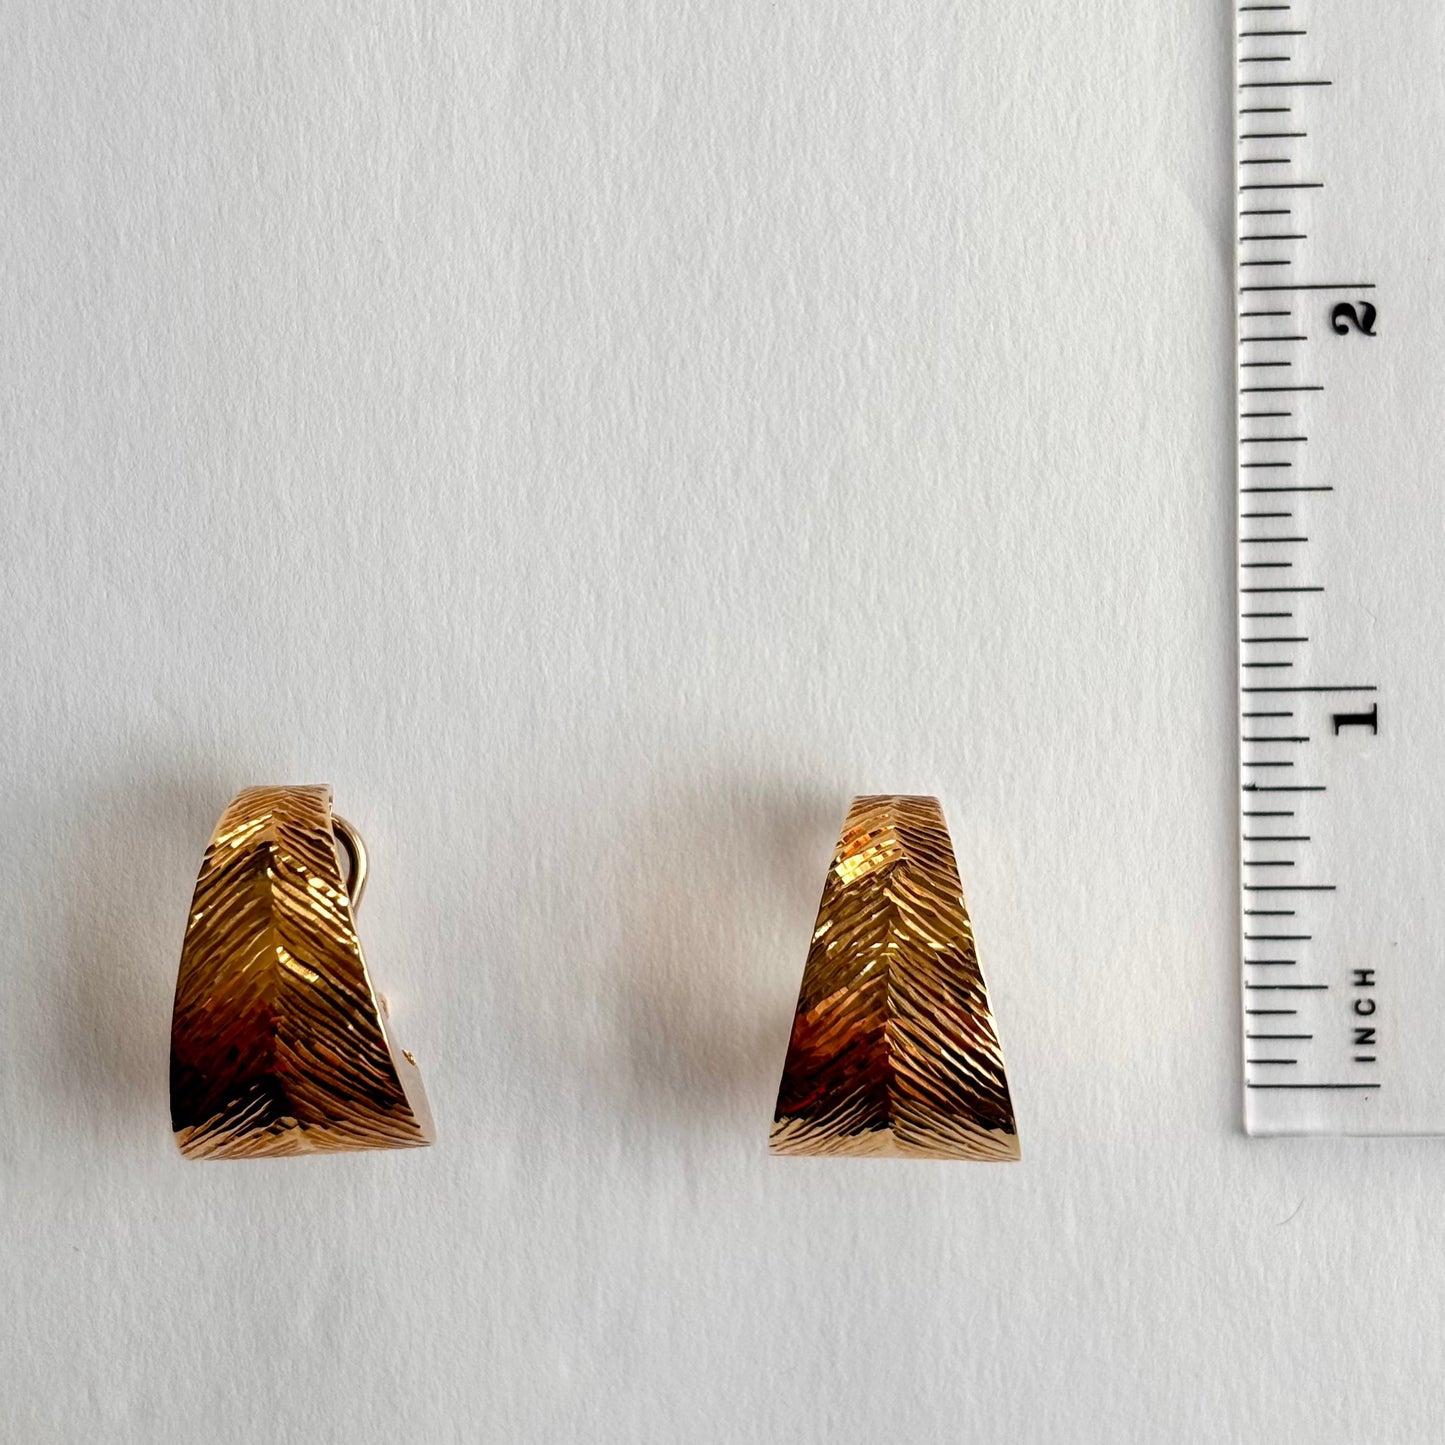 18k Solid Gold Leaf Earrings, Lever Back Dangle Earrings